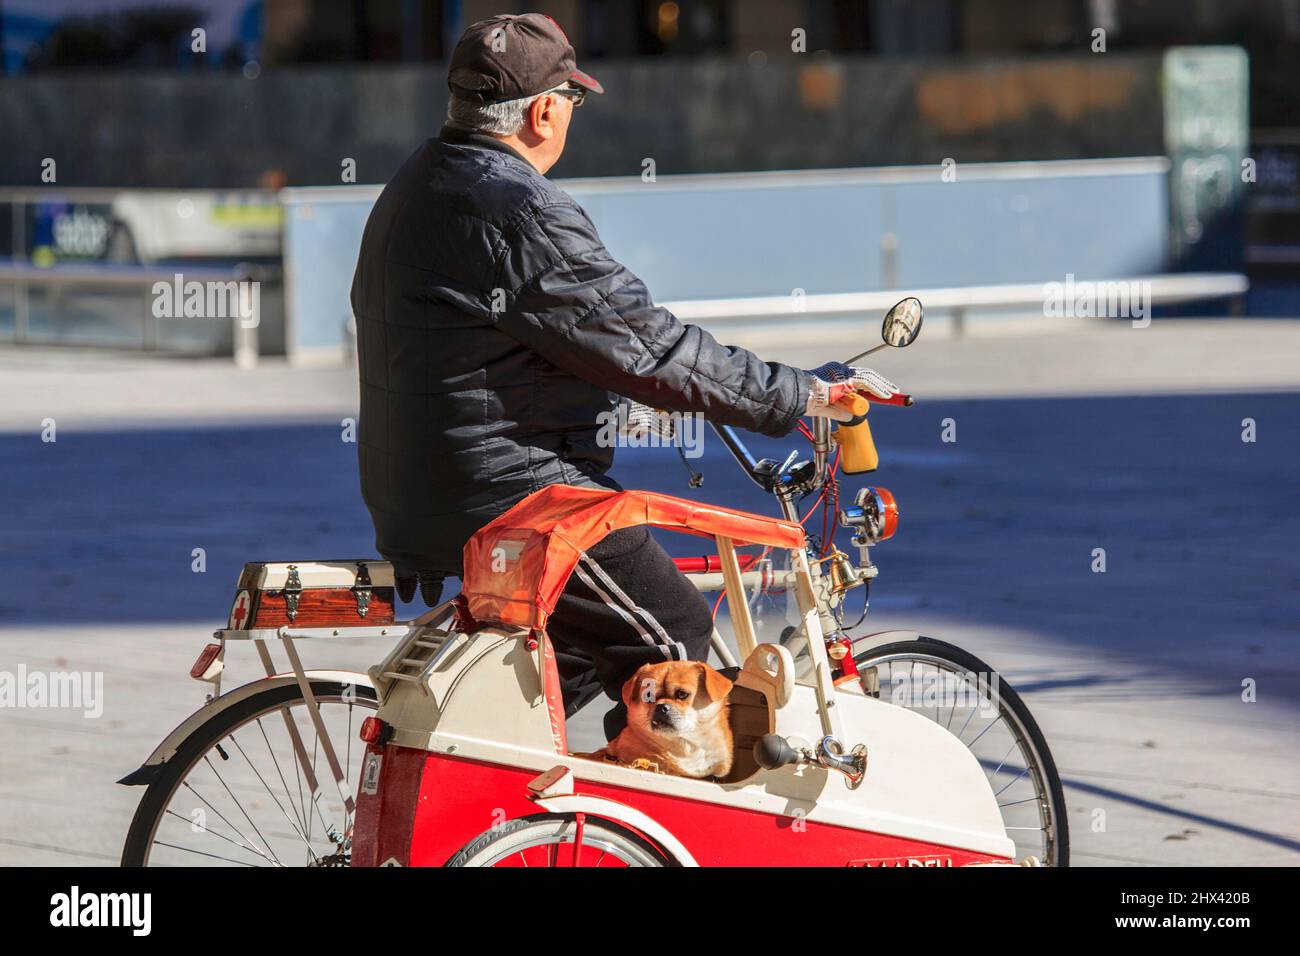 homme sur bicyclette avec son chien qui court a cote